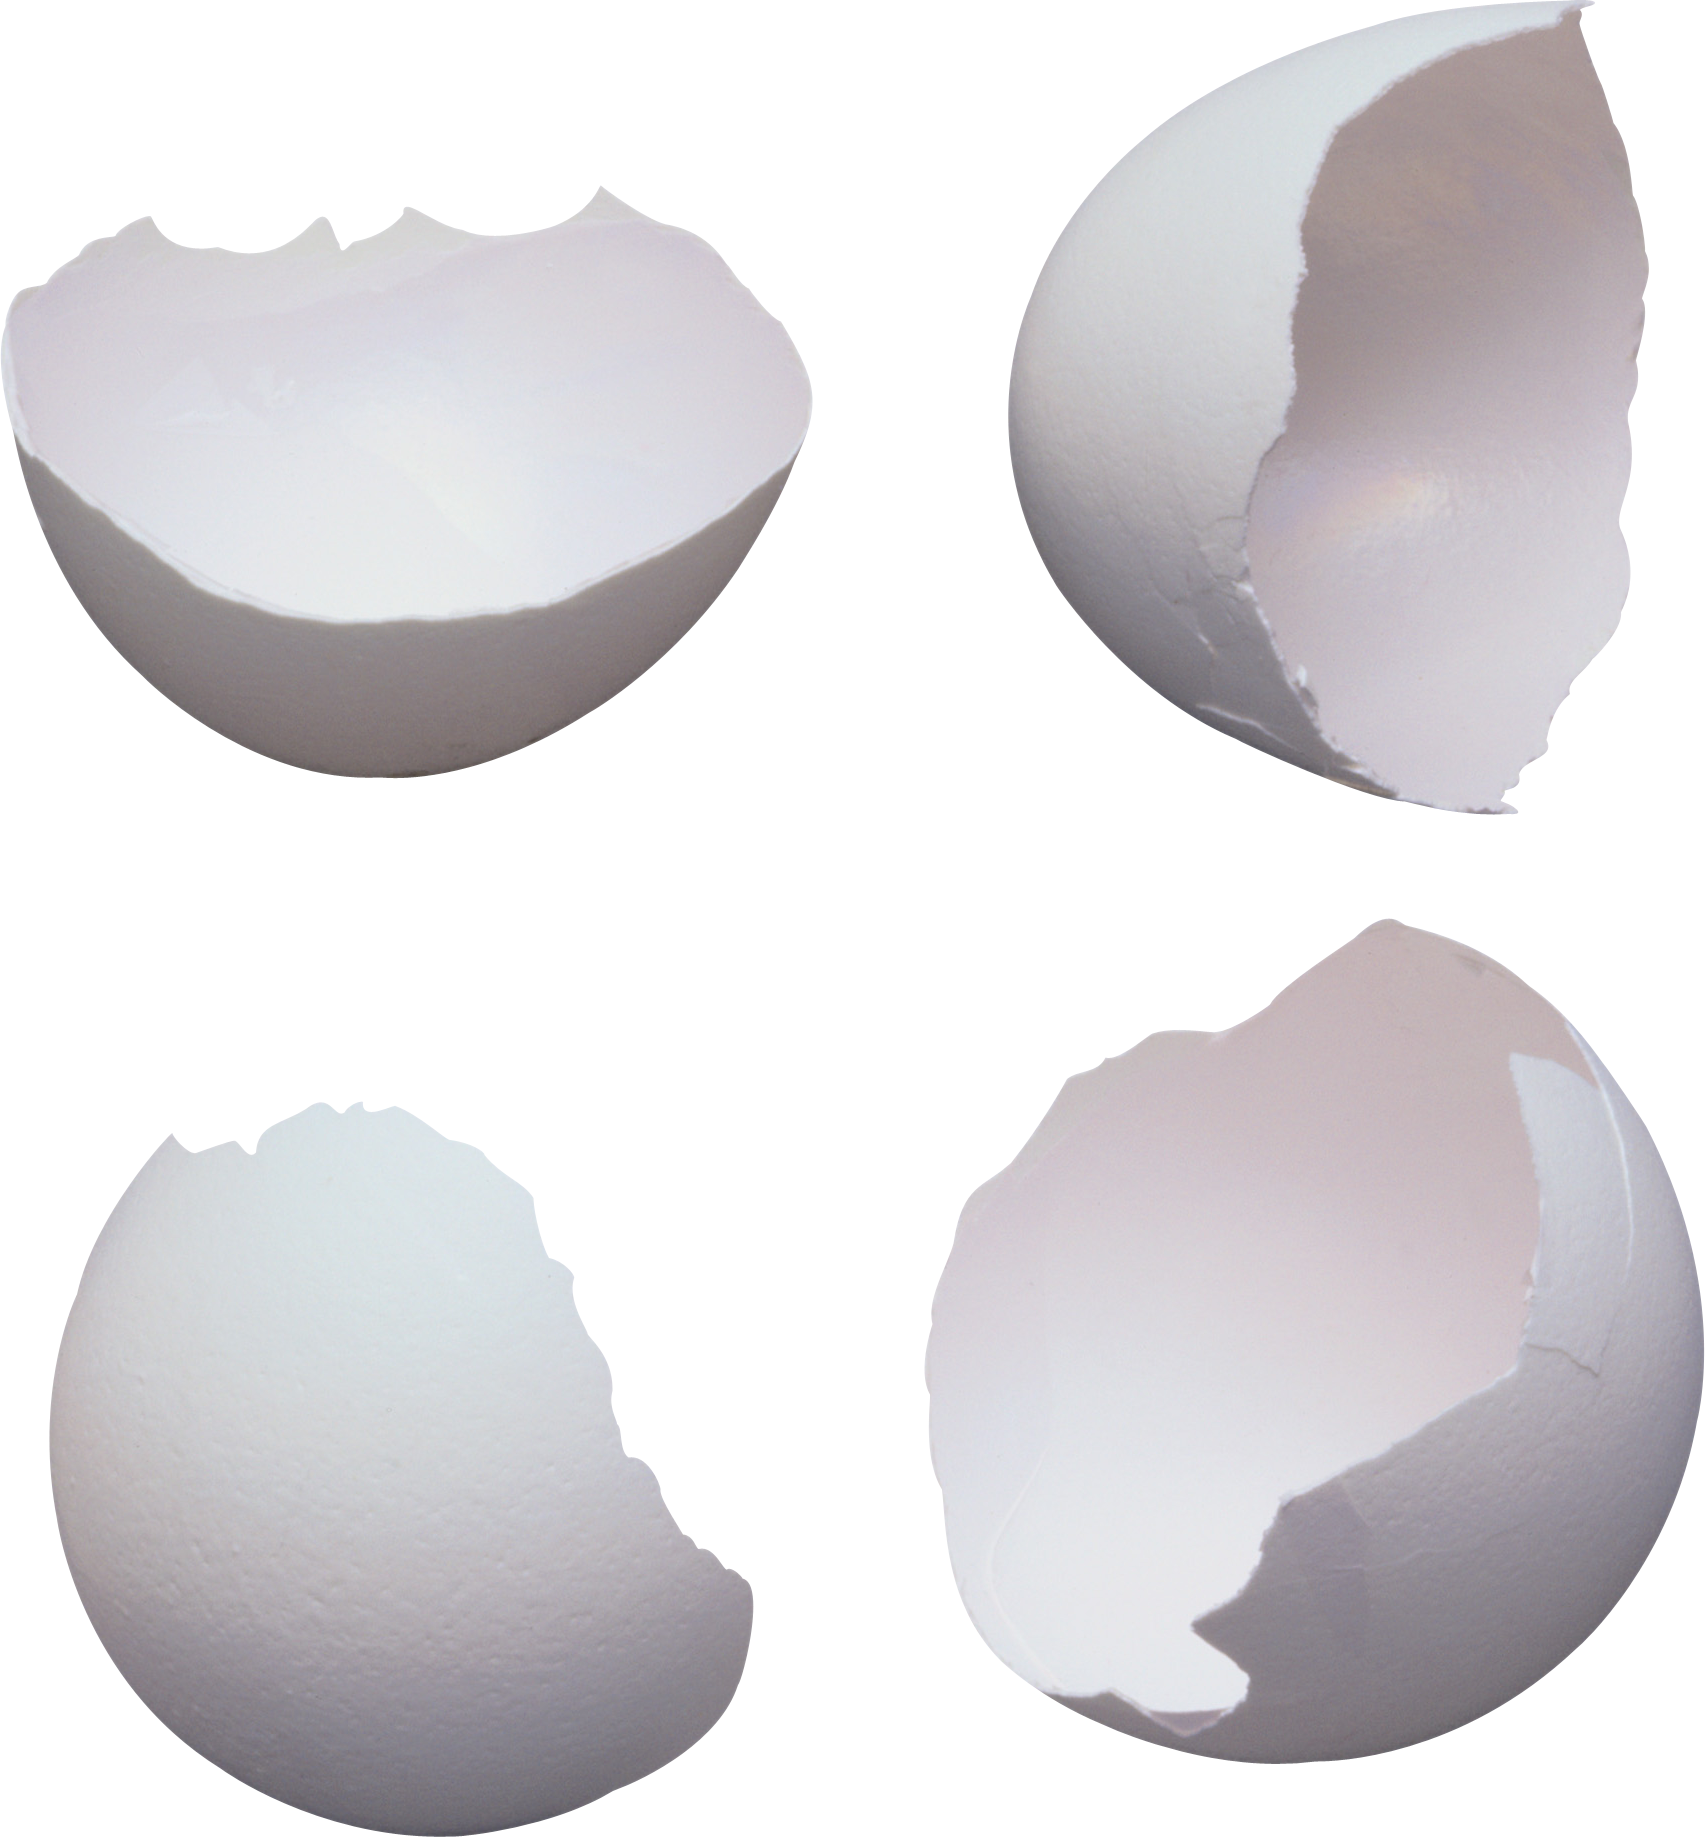 Casca de ovo